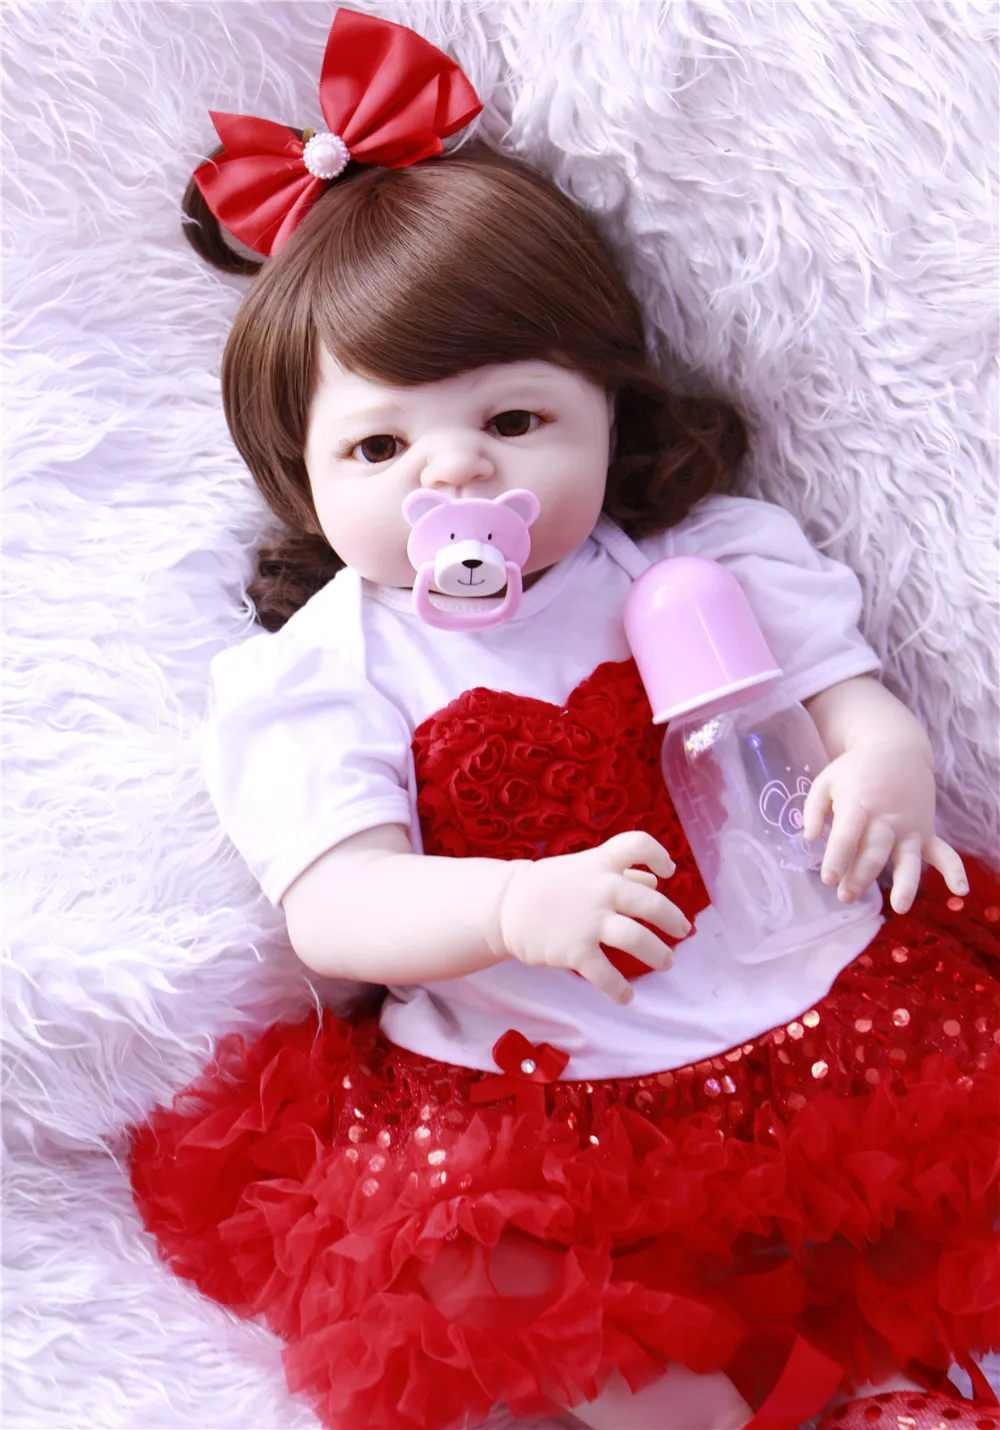 Горячая пупсик реалистичный приклеенный парик Bebes Reborn кукла 22 дюймов полный силиконовый винил детская игрушка для девочек рождественские подарки